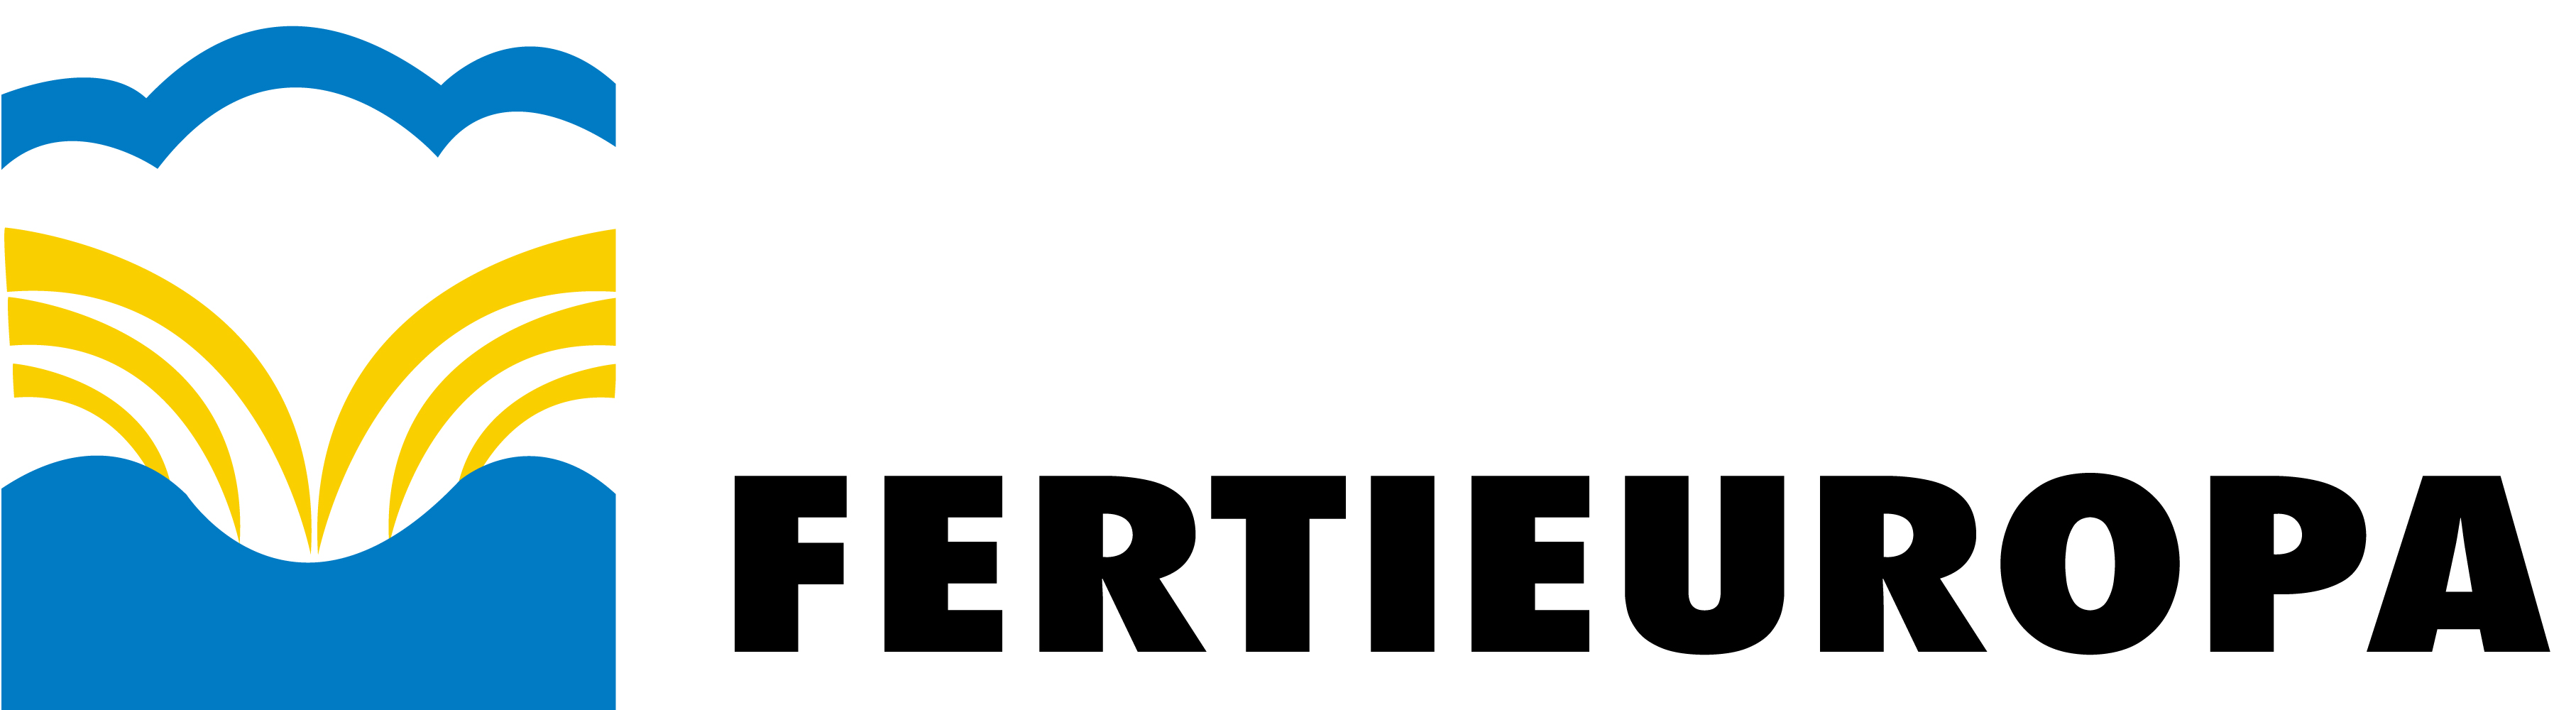 Fertieuropa logo 10 2018